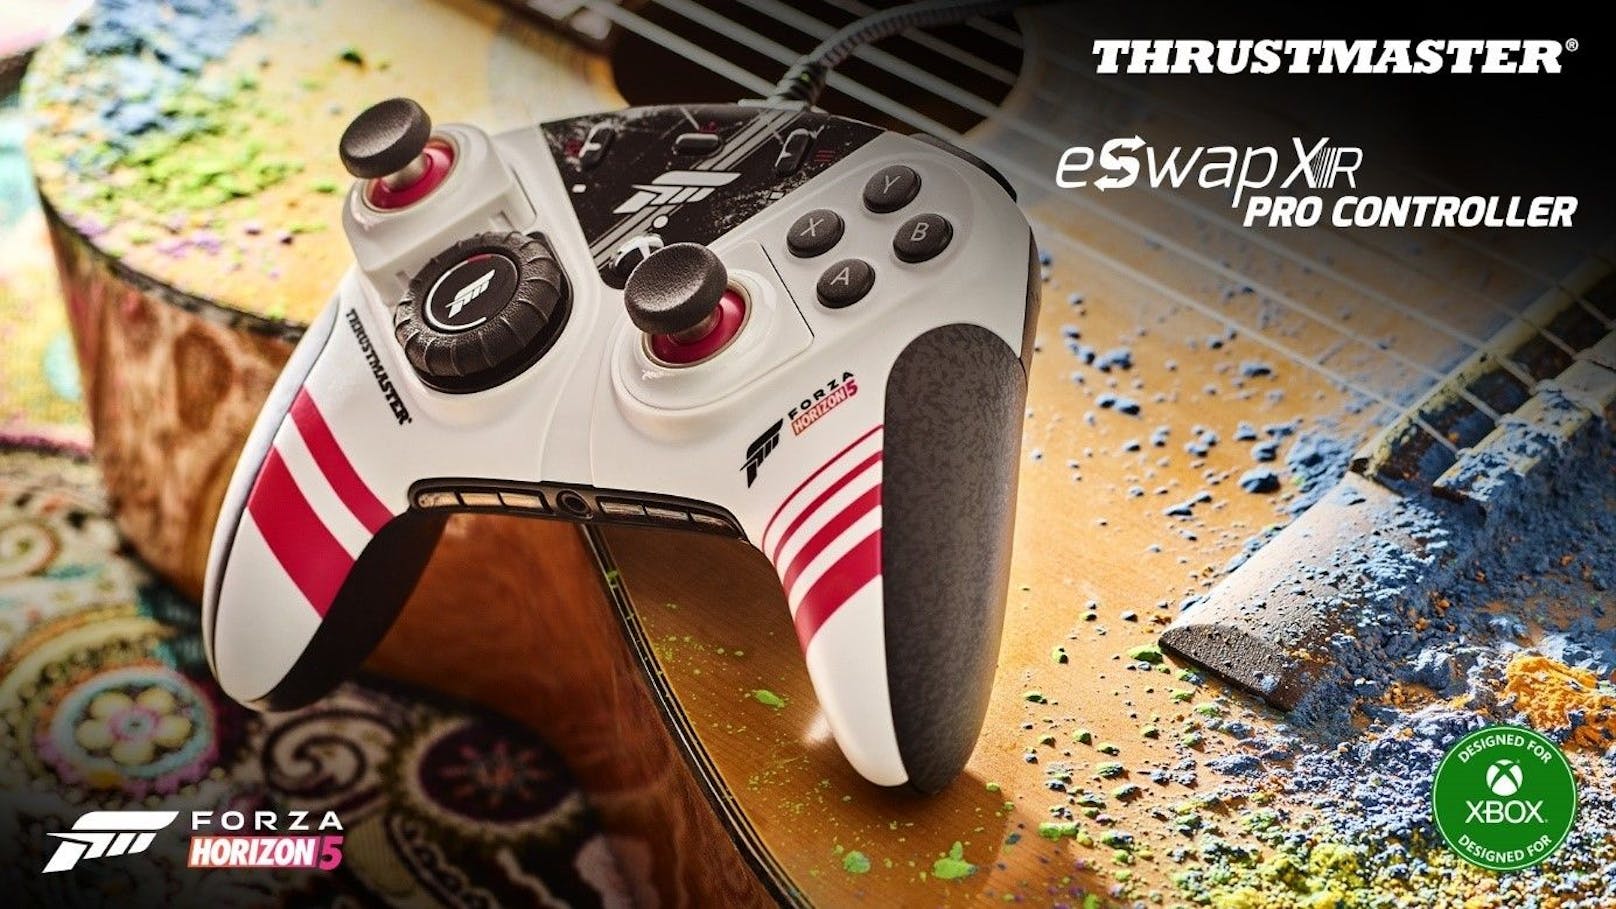 Thrustmaster bringt in Zusammenarbeit mit "Forza Horizon 5" den eSwap XR Pro Controller auf den Markt.